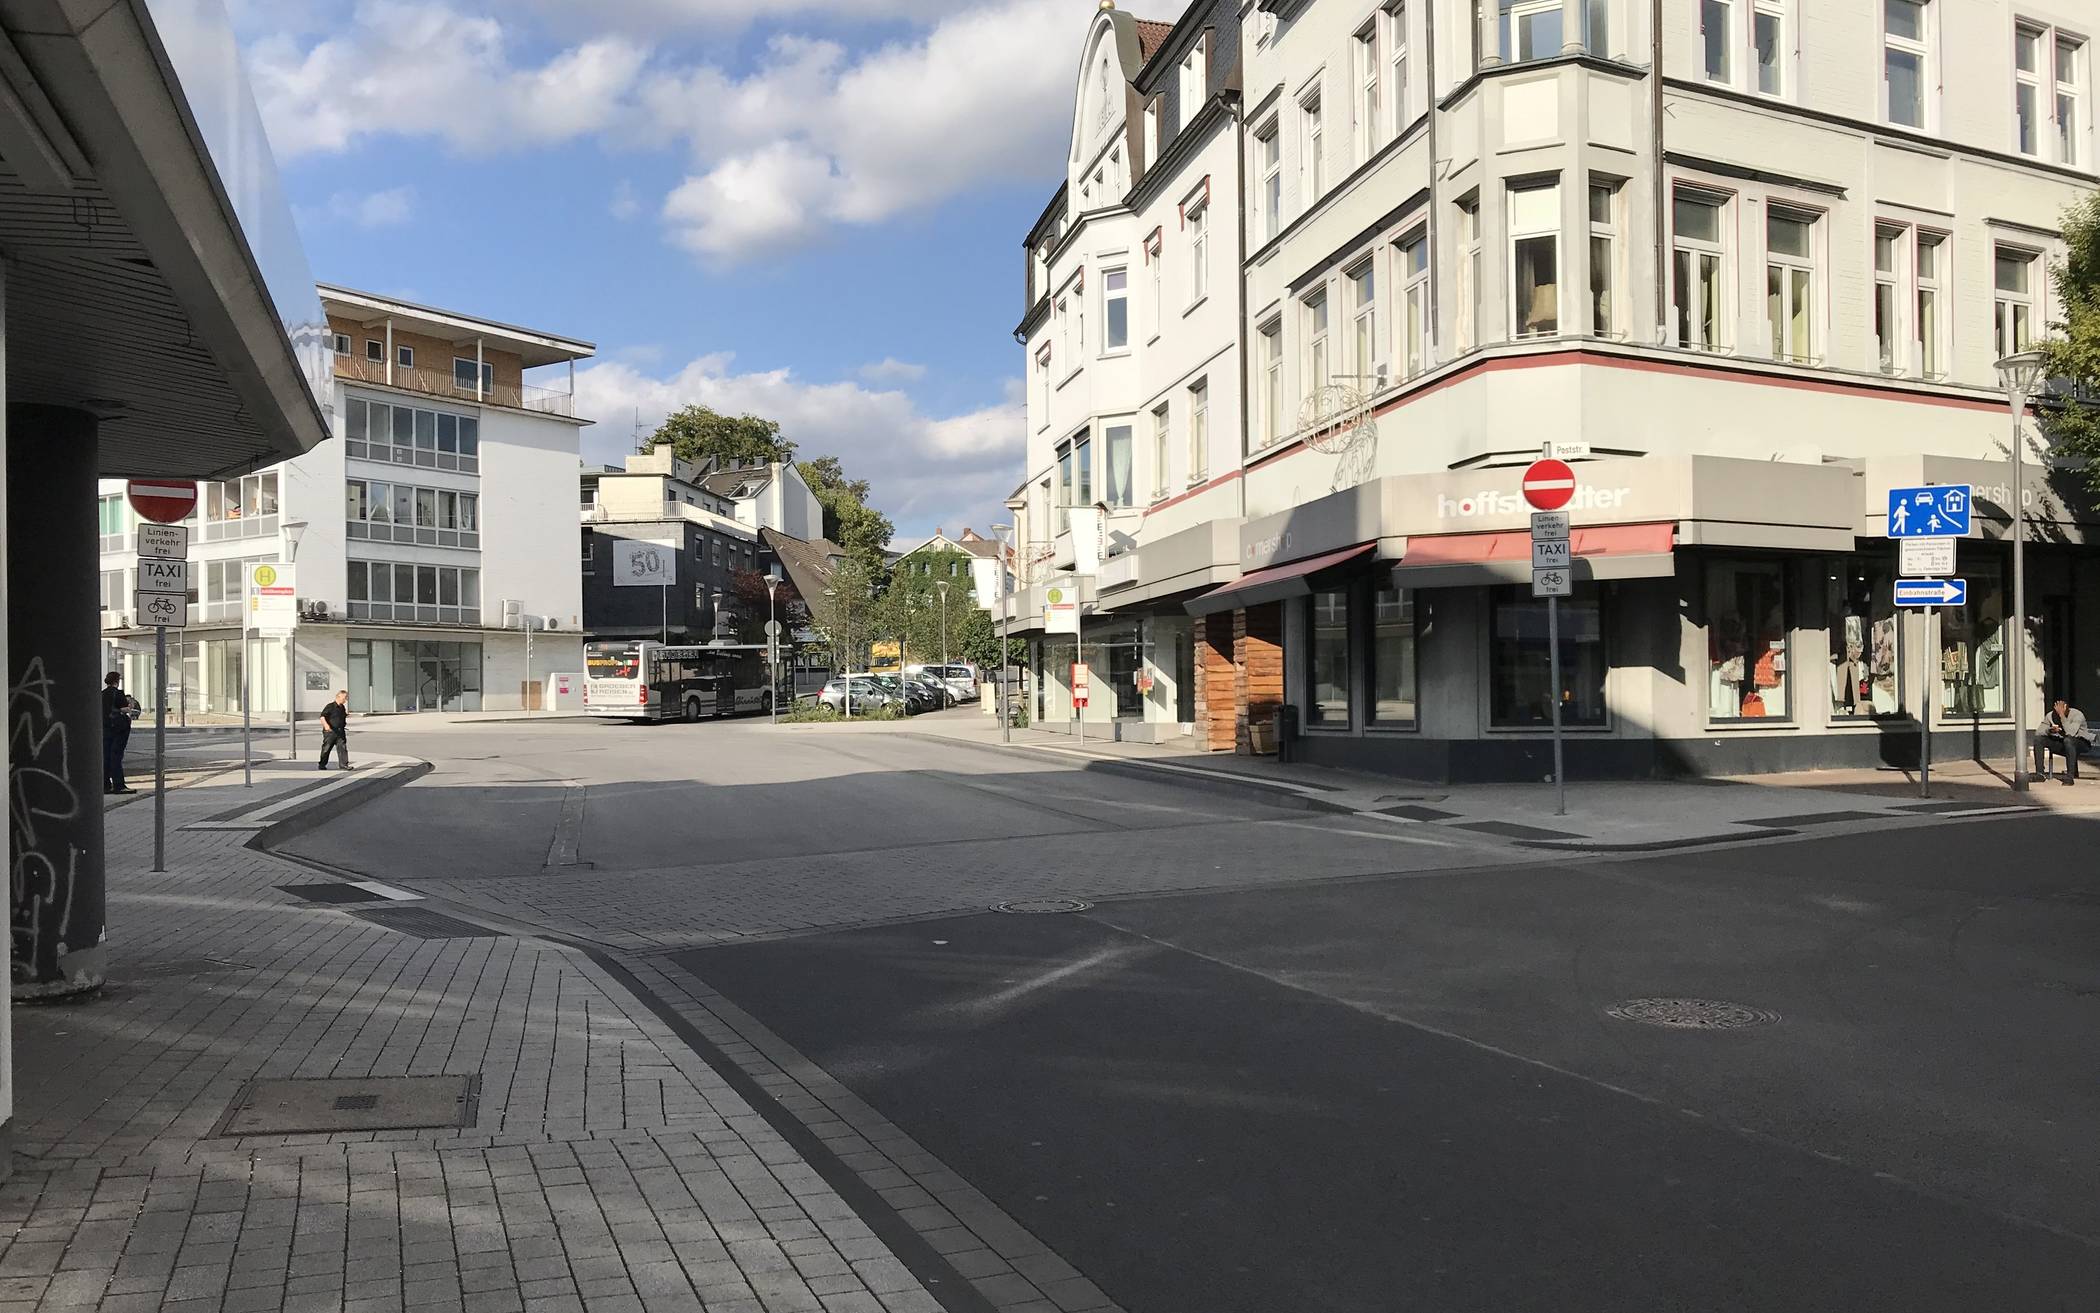  Noch gilt „Durchfahrt verboten“ auf der unteren Johannes-Flintrop-Straße zwischen Post- und Schwarzbachstraße. 